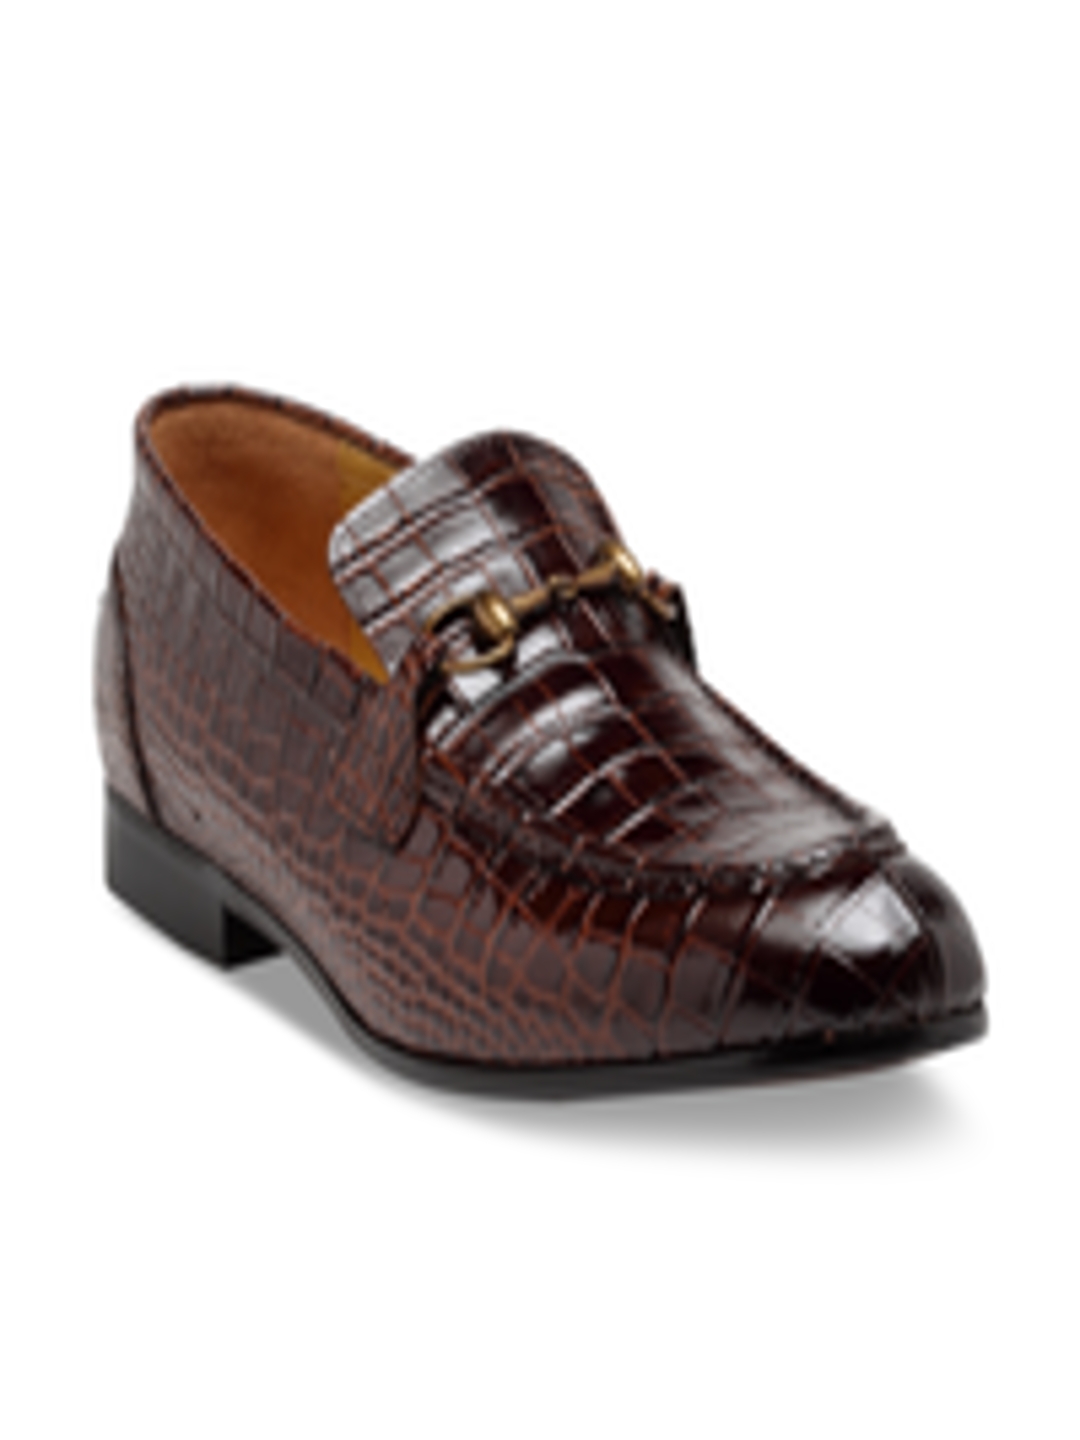 Buy MODELLO DOMANI Men Brown Leather Semi Formal Slip Ons - Formal ...